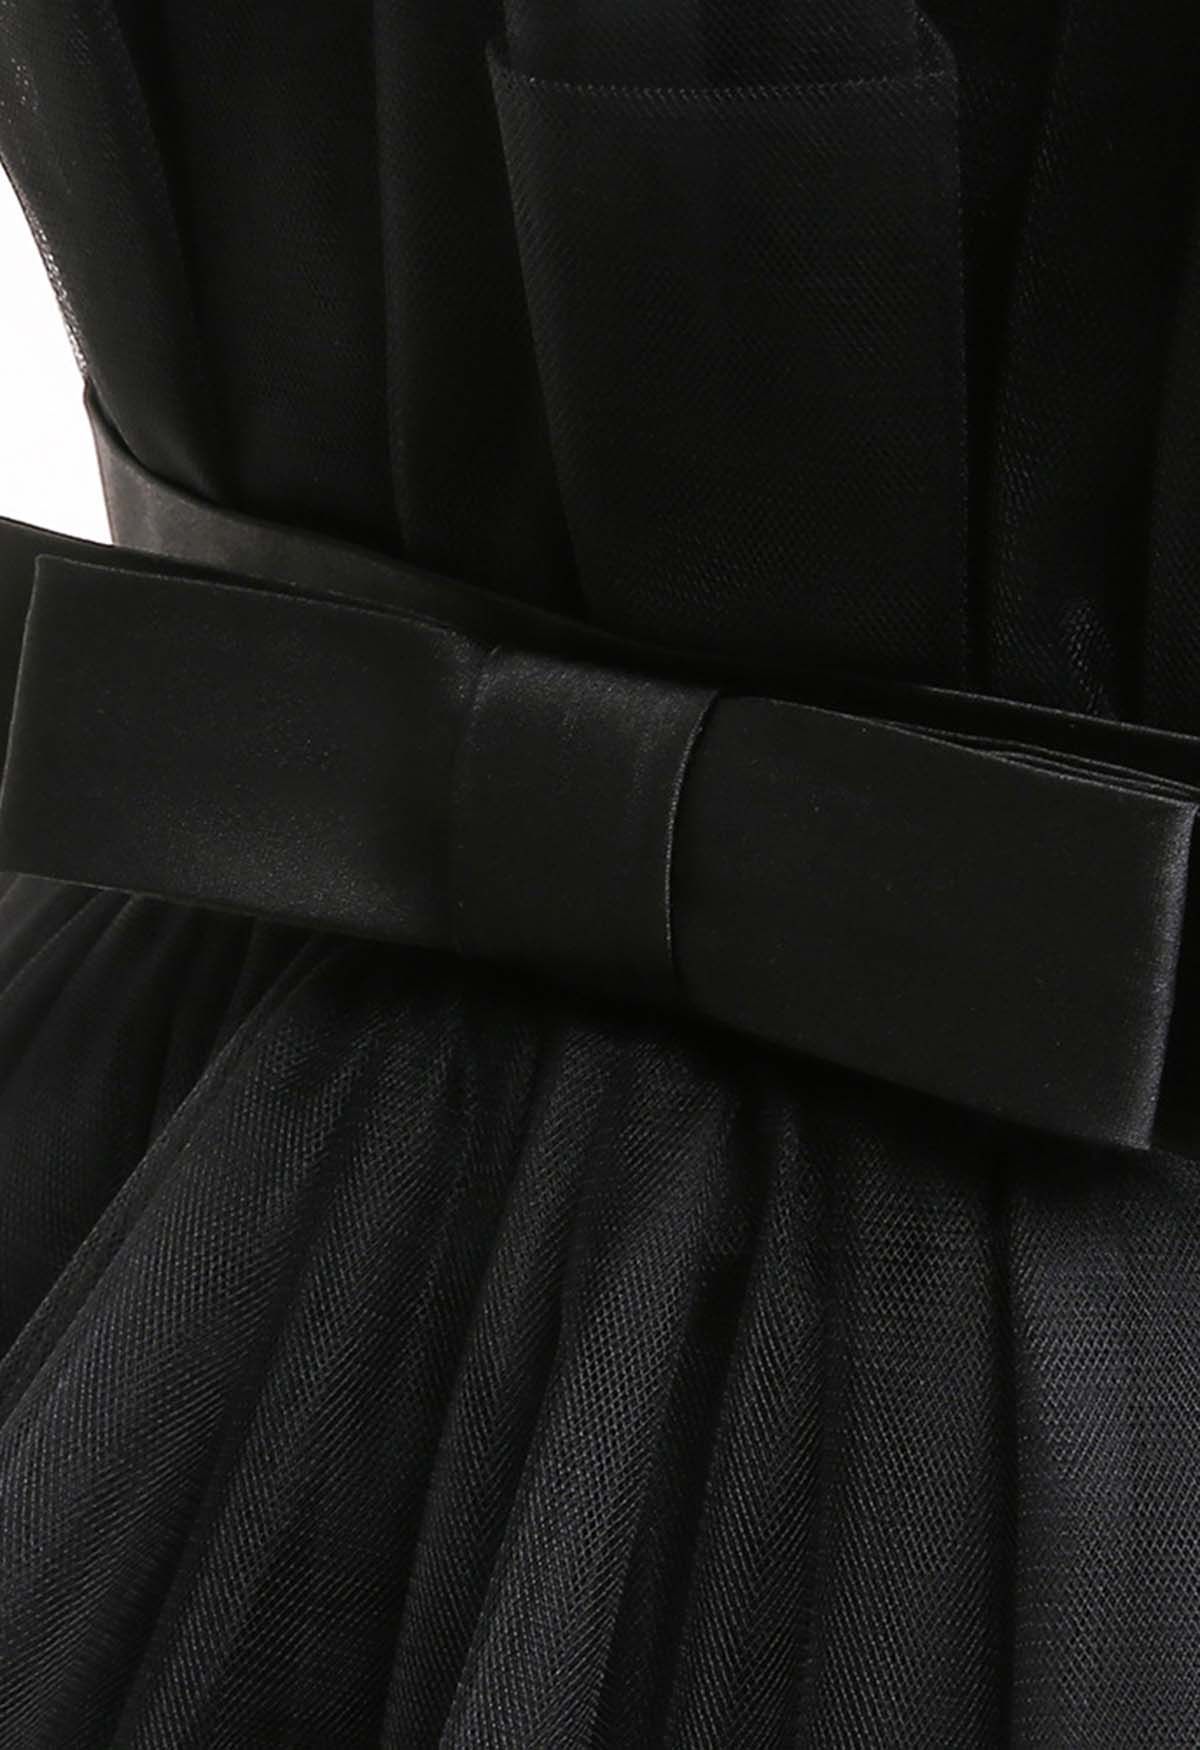 فستان تول بعقدة على الخصر باللون الأسود للأطفال